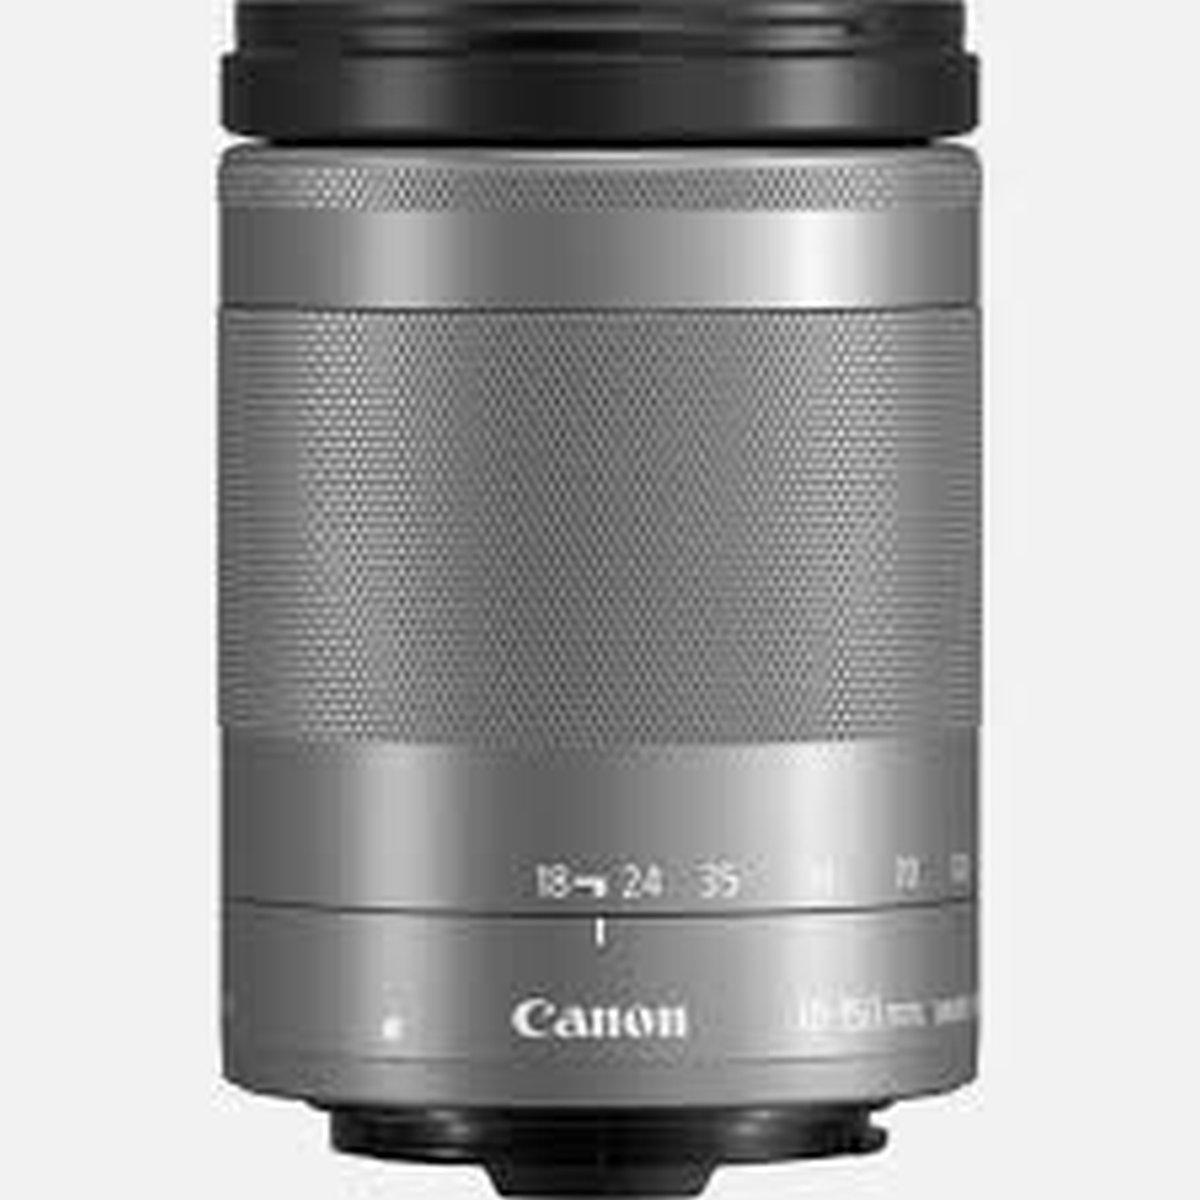 Canon Ef-M 18-150mm F/3.5-6.3 Is Stm - Silver - Obiettivoaps-c - Garanzia Canon Italia